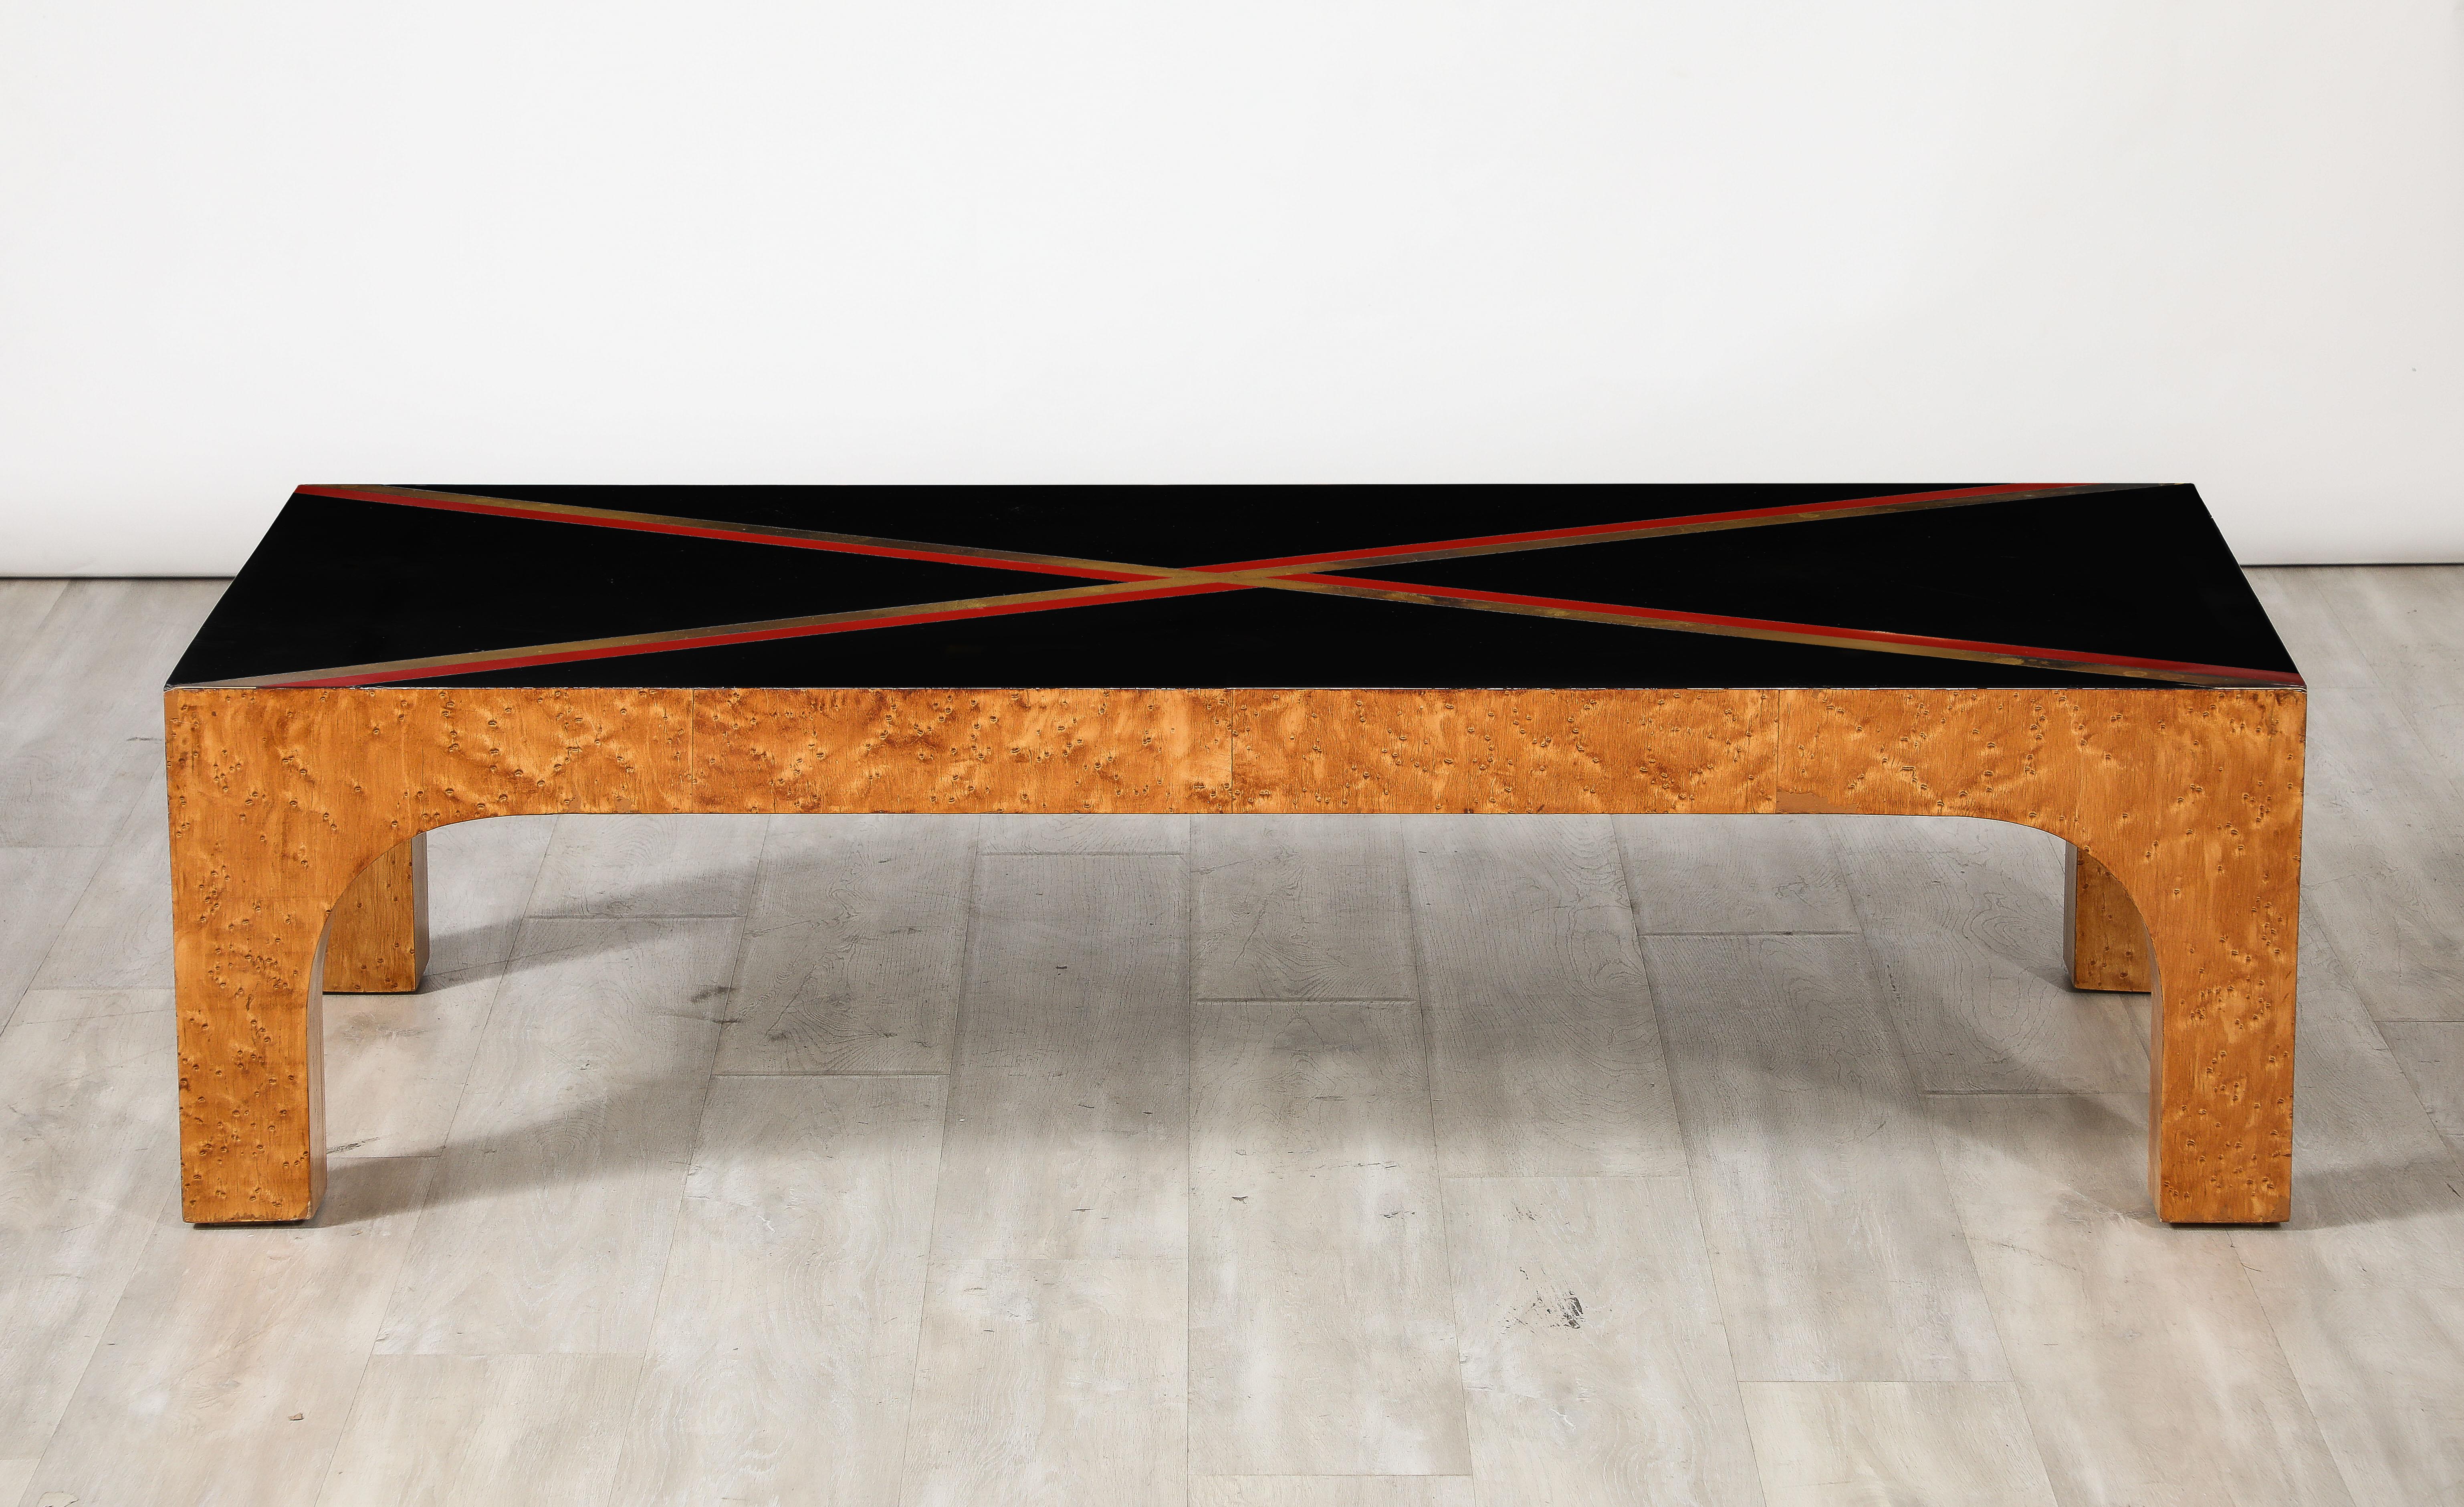 Table basse moderniste italienne aux lignes épurées. Le plateau en verre noir est orné d'une bande de stratifié rouge et métallique en forme de X. Il repose sur des pieds et un tablier en érable à œil d'oiseau.  Le verre et les bandes noires créent